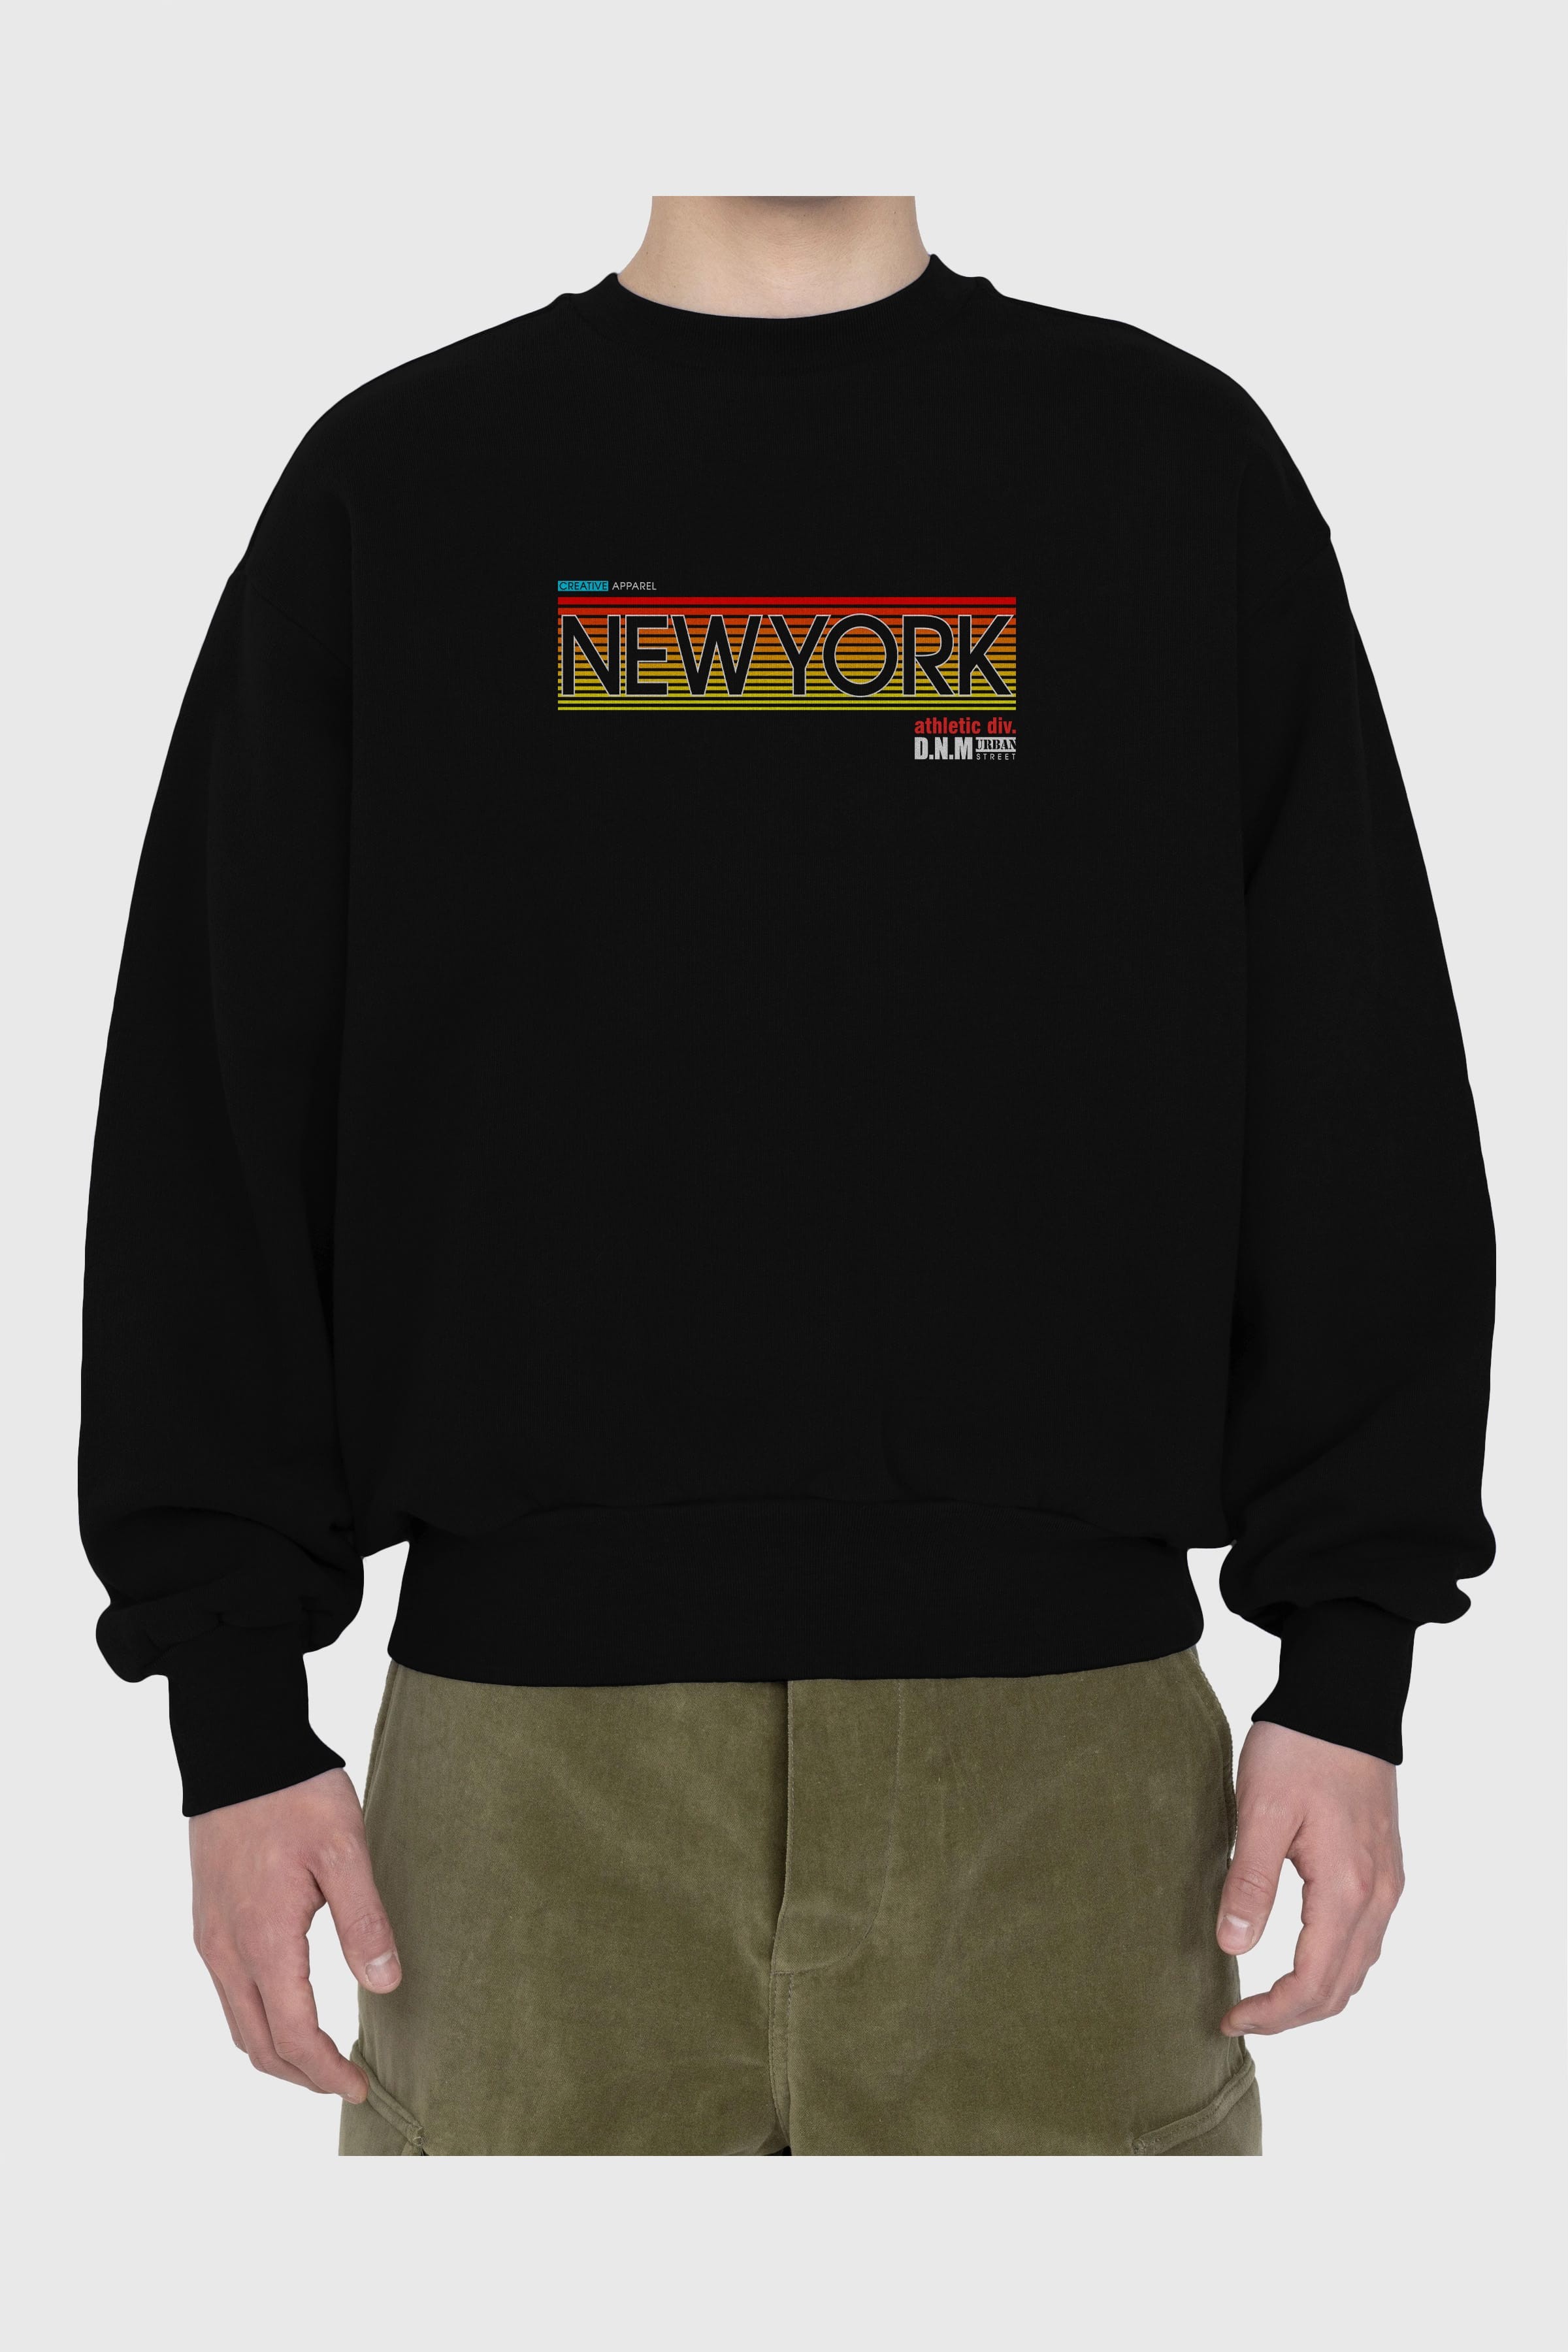 New York Denim Ön Baskılı Oversize Sweatshirt Erkek Kadın Unisex